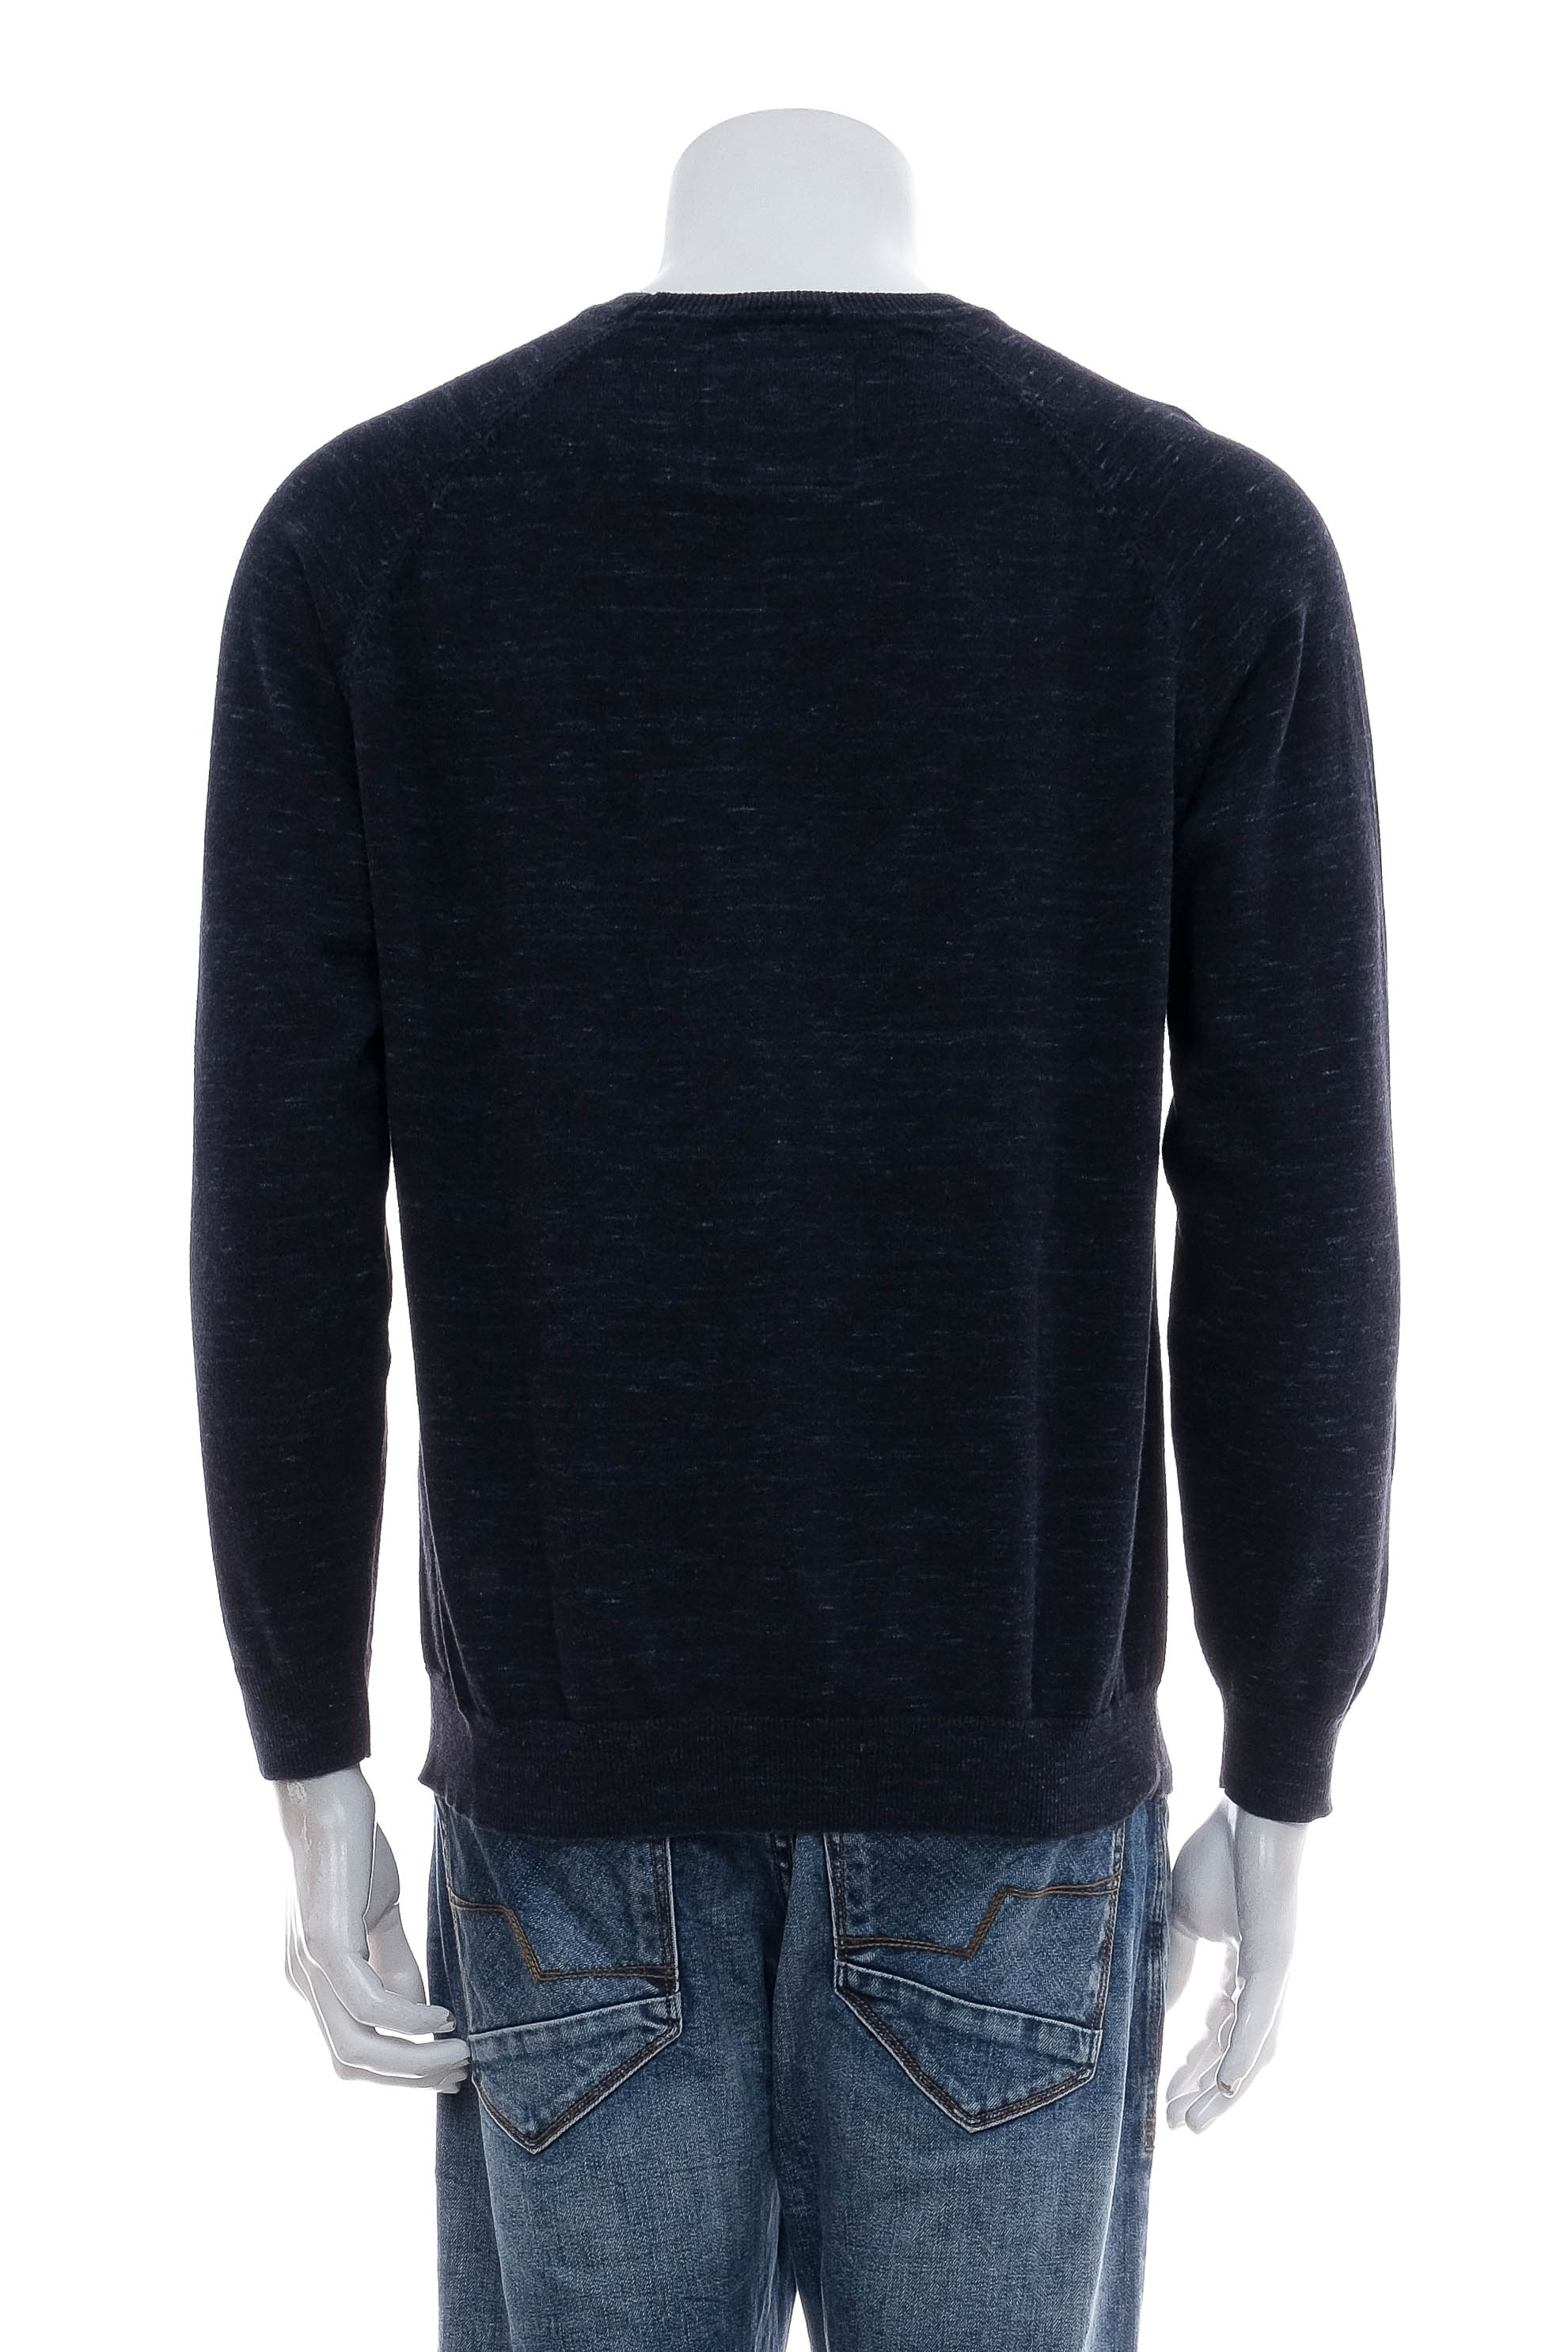 Men's sweater - SuperDry - 1